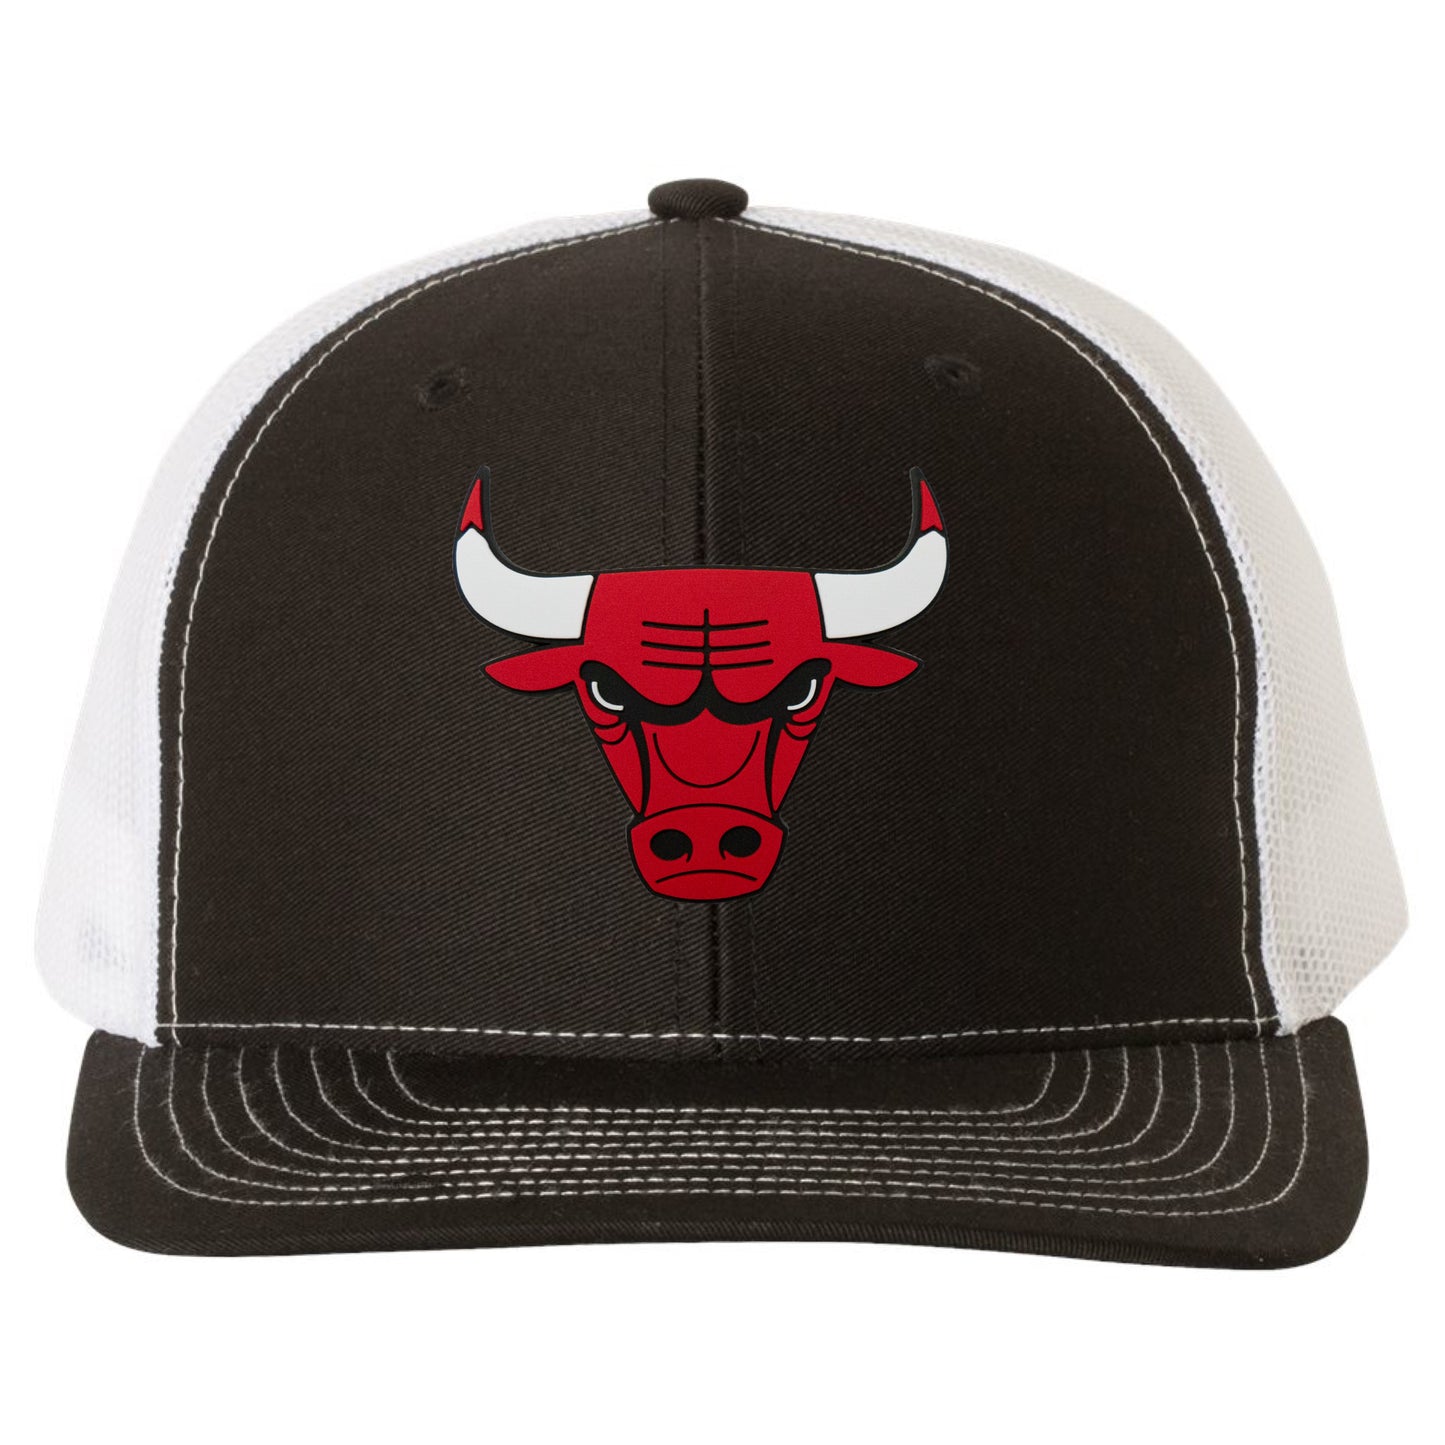 Chicago Bulls YP Snapback Trucker Hat- Black/ White - Ten Gallon Hat Co.